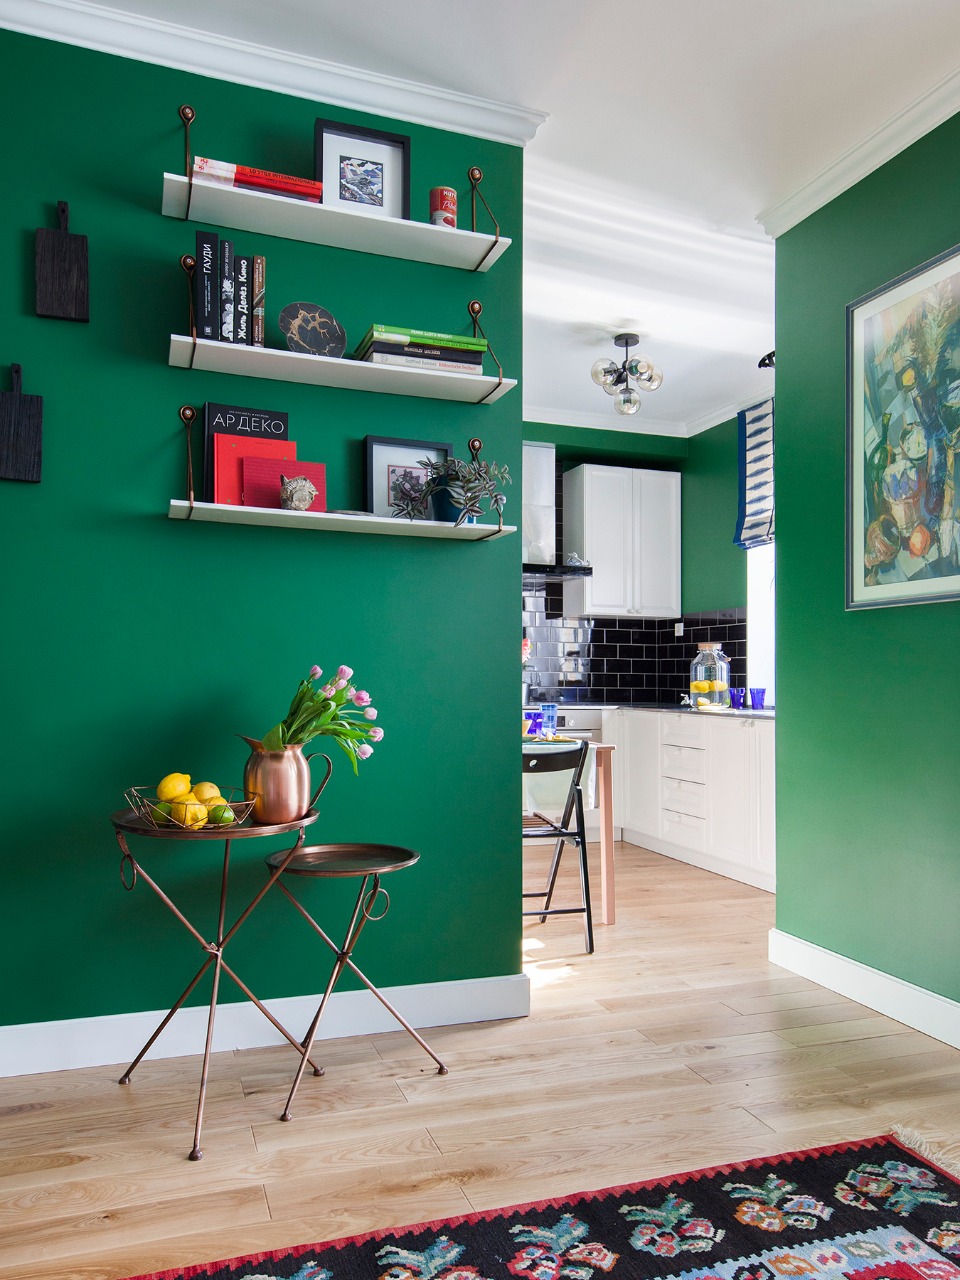 Купить однокомнатную квартиру в зеленом. Зеленый интерьер. Зеленый цвет стен в интерьере. Салатовые стены. Зеленая стена.